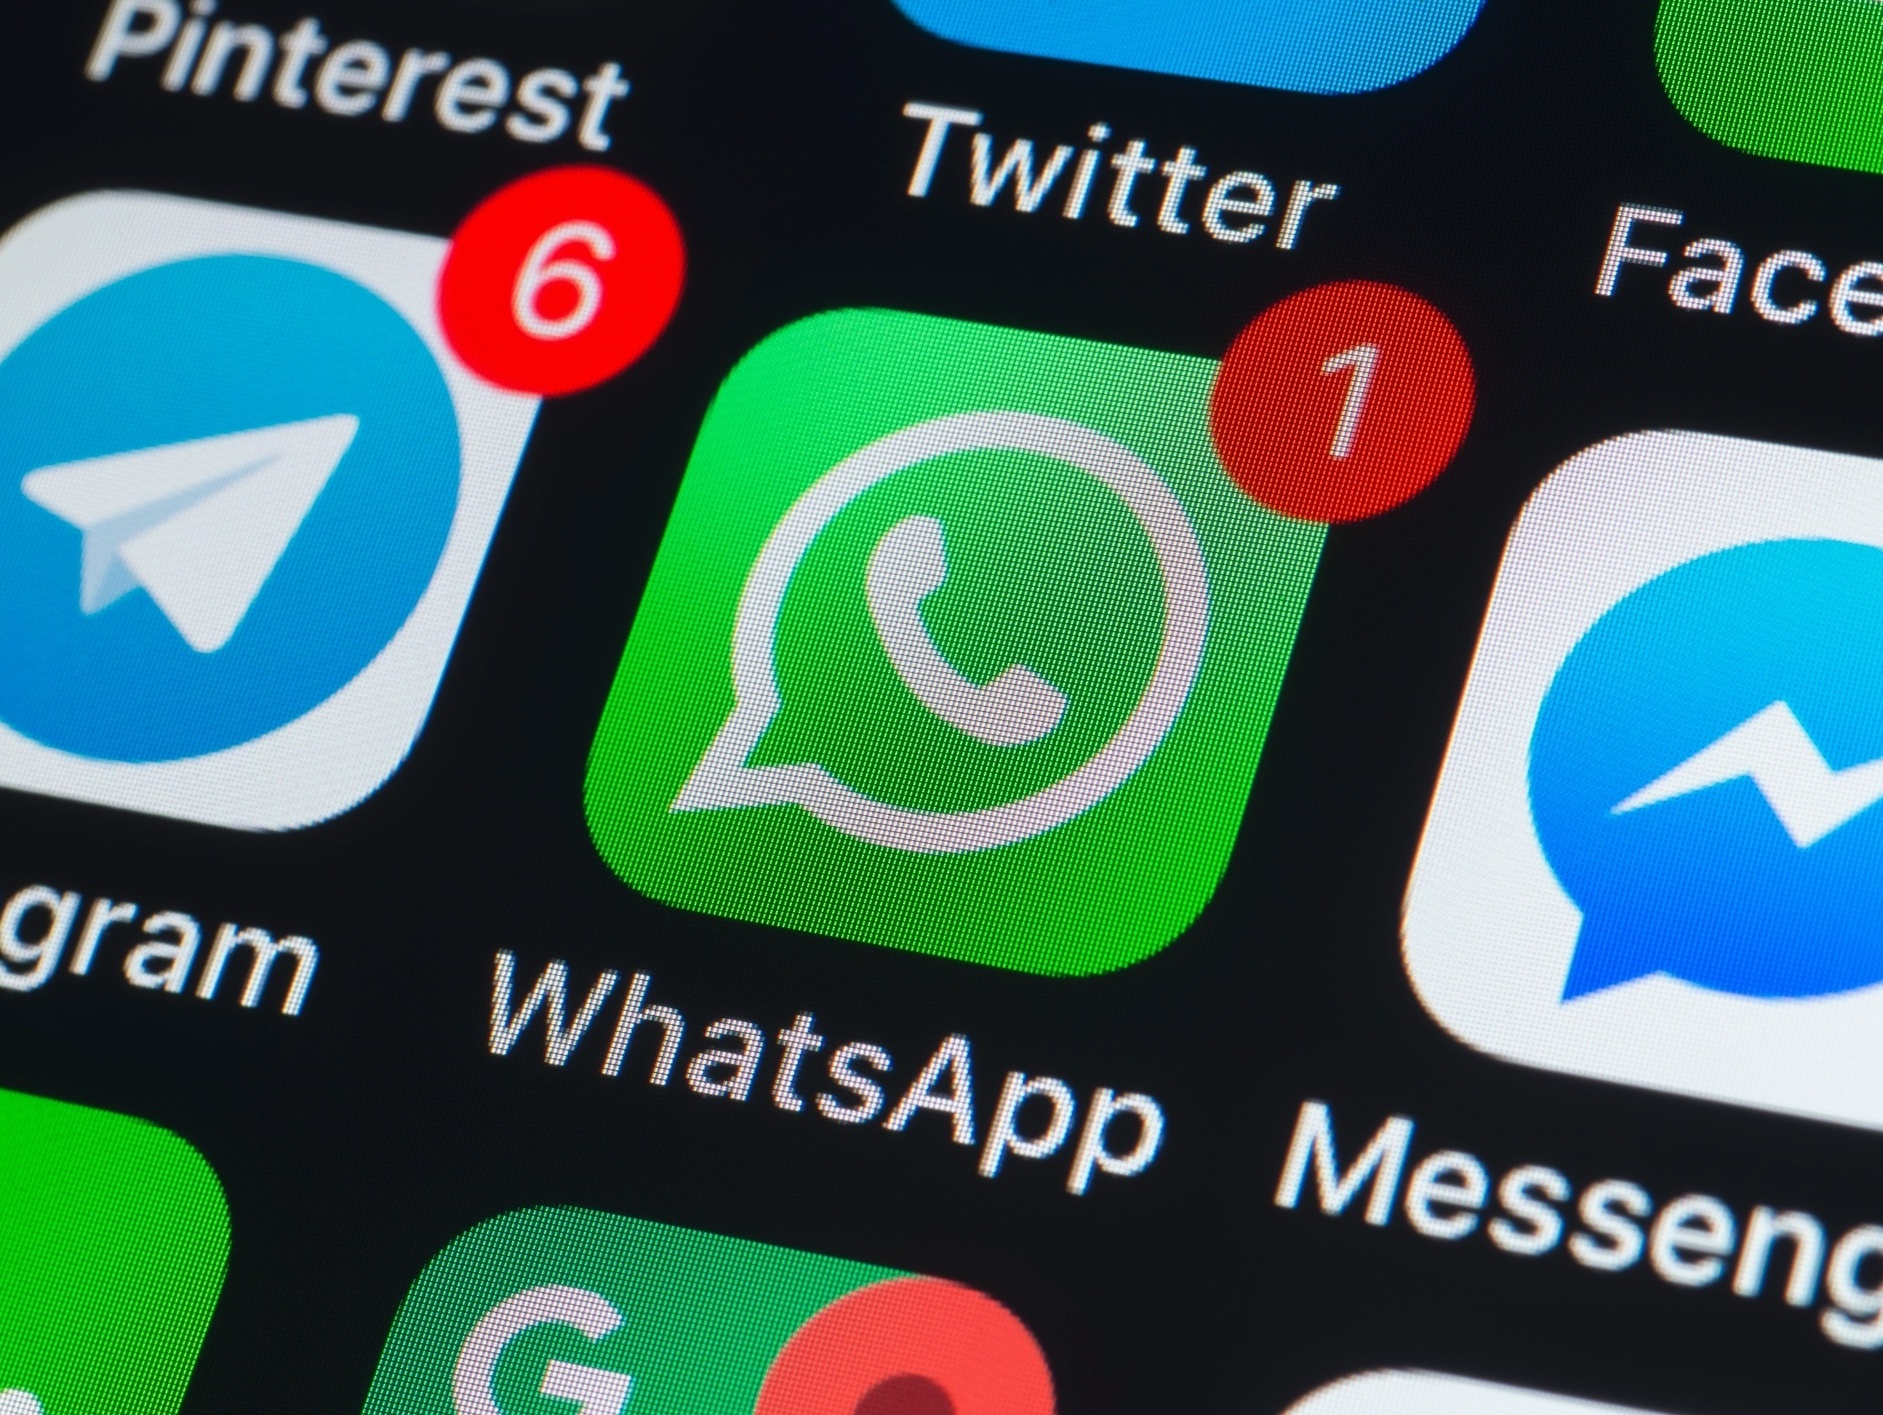 O que é Telegram? Saiba tudo sobre o app russo que é rival do WhatsApp